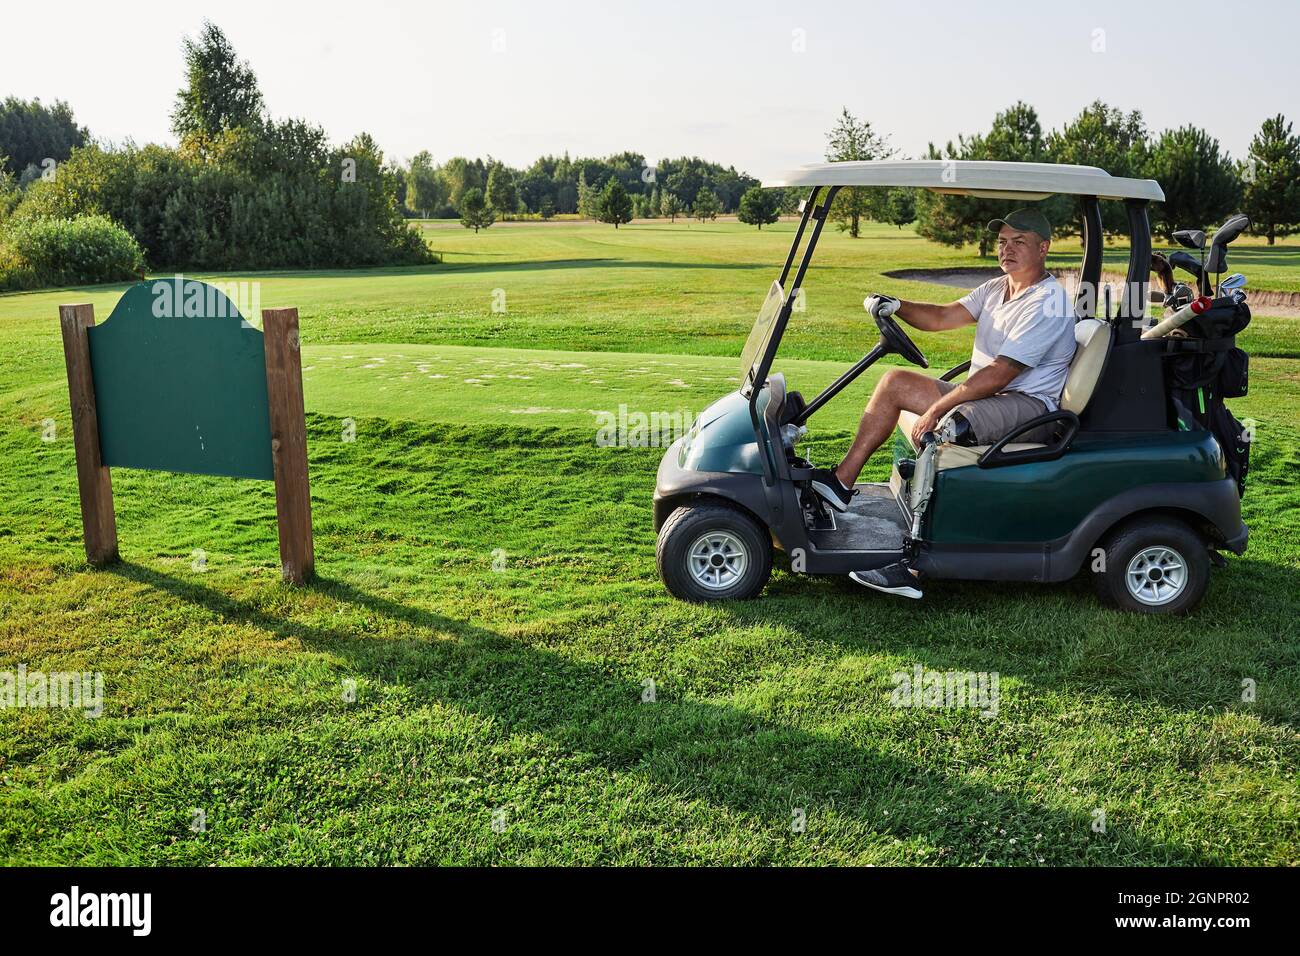 Golfeur avec une jambe prothétique voiture de golf sur le terrain d'herbe près de la plaque signalétique du club de golf lors d'une journée ensoleillée sur fond de paysage et fairway Banque D'Images